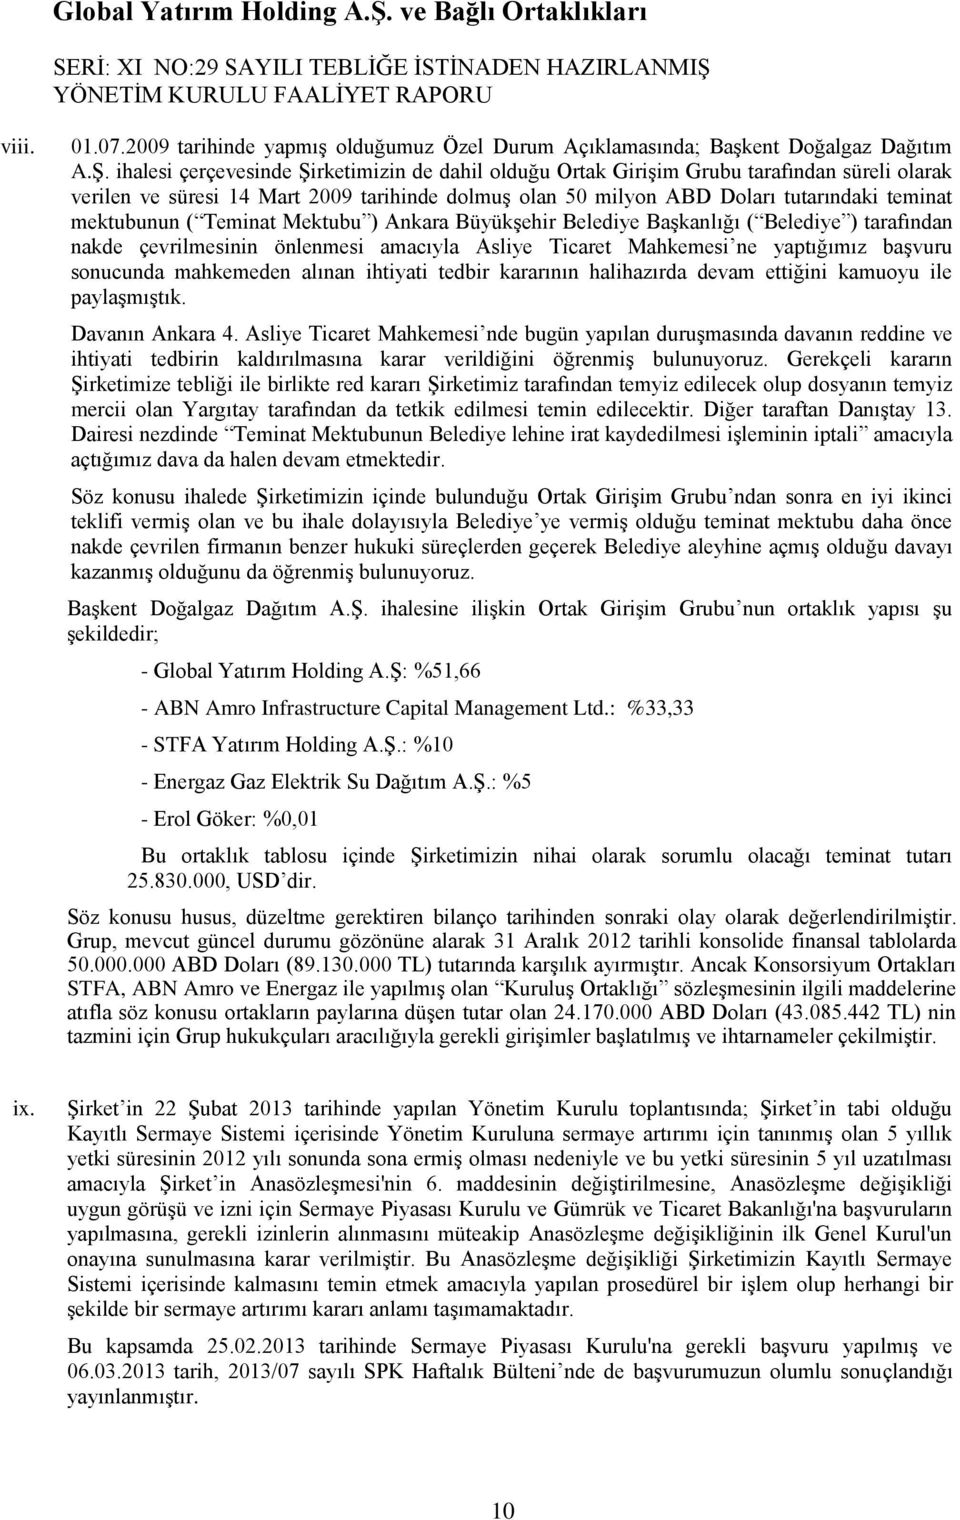 ( Teminat Mektubu ) Ankara BüyükĢehir Belediye BaĢkanlığı ( Belediye ) tarafından nakde çevrilmesinin önlenmesi amacıyla Asliye Ticaret Mahkemesi ne yaptığımız baģvuru sonucunda mahkemeden alınan